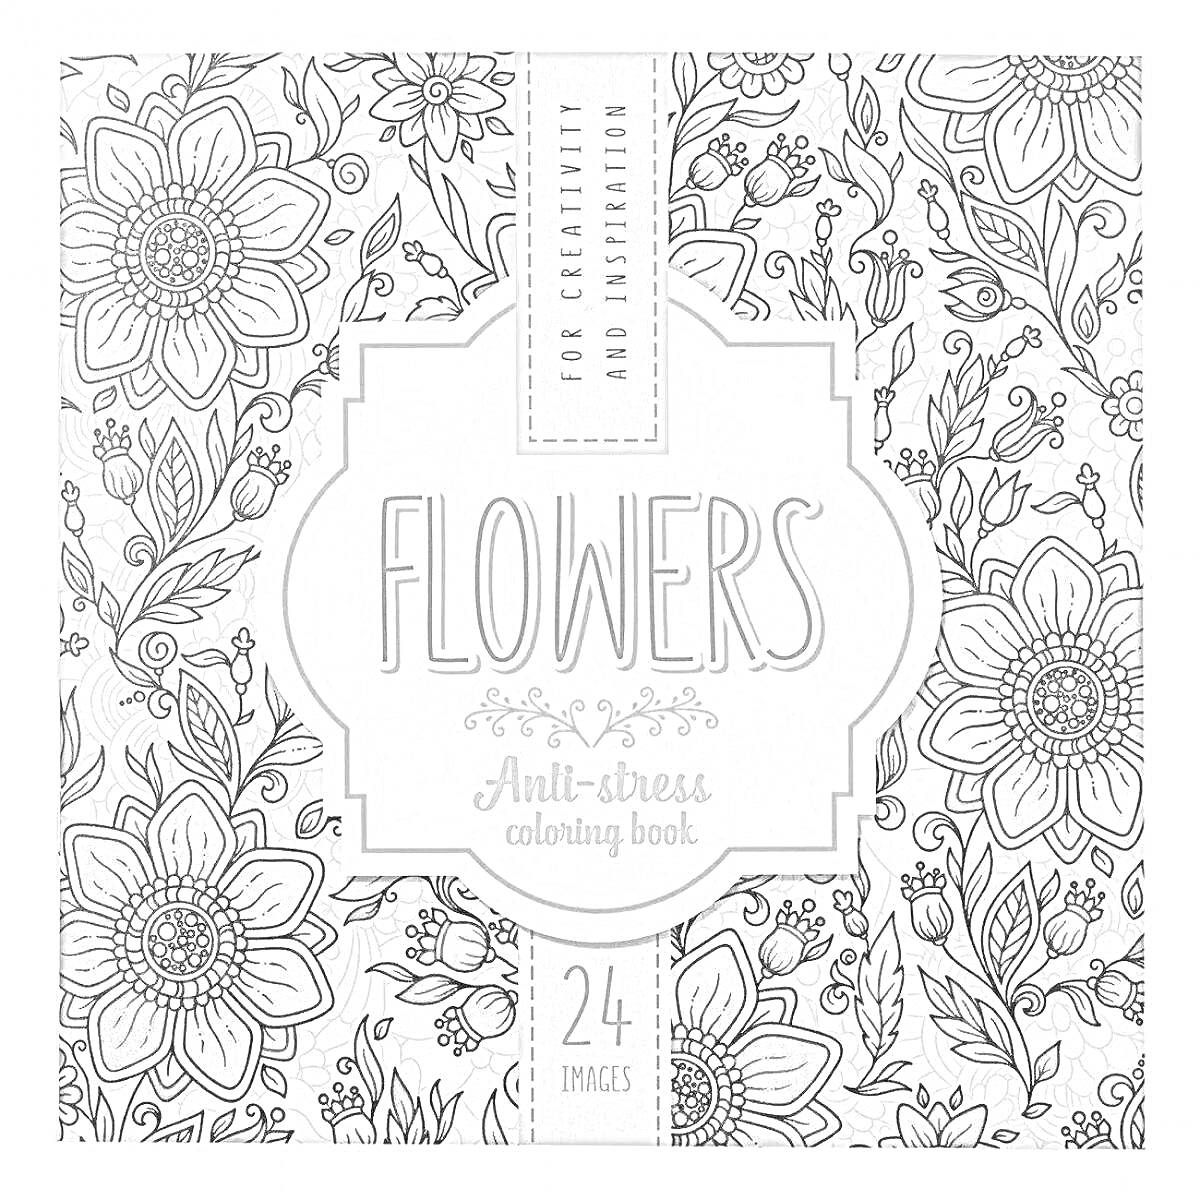 Раскраска Flowers Anti-stress coloring book для творчества и релаксации, 24 картинки, цветы, растения, листья, узоры